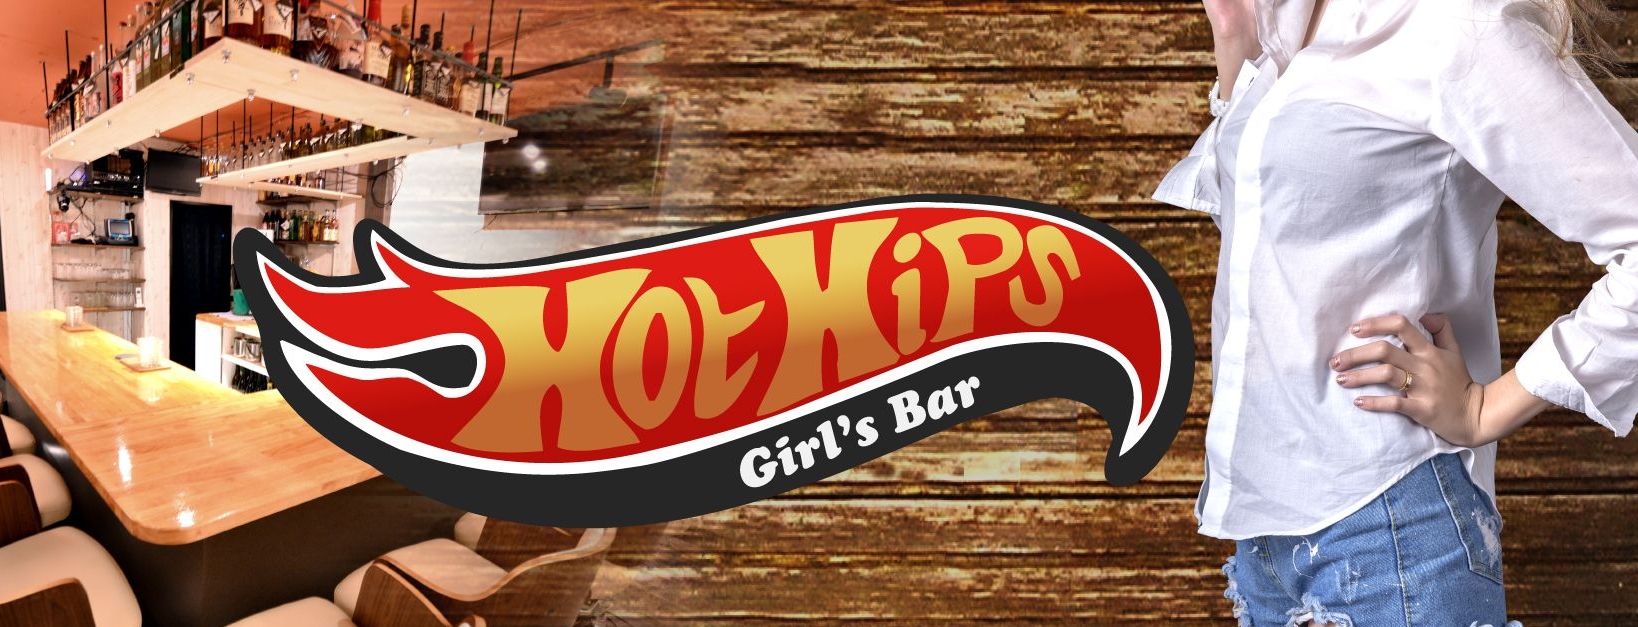 Girl's Bar Hot Hips ～ホット ヒップス～